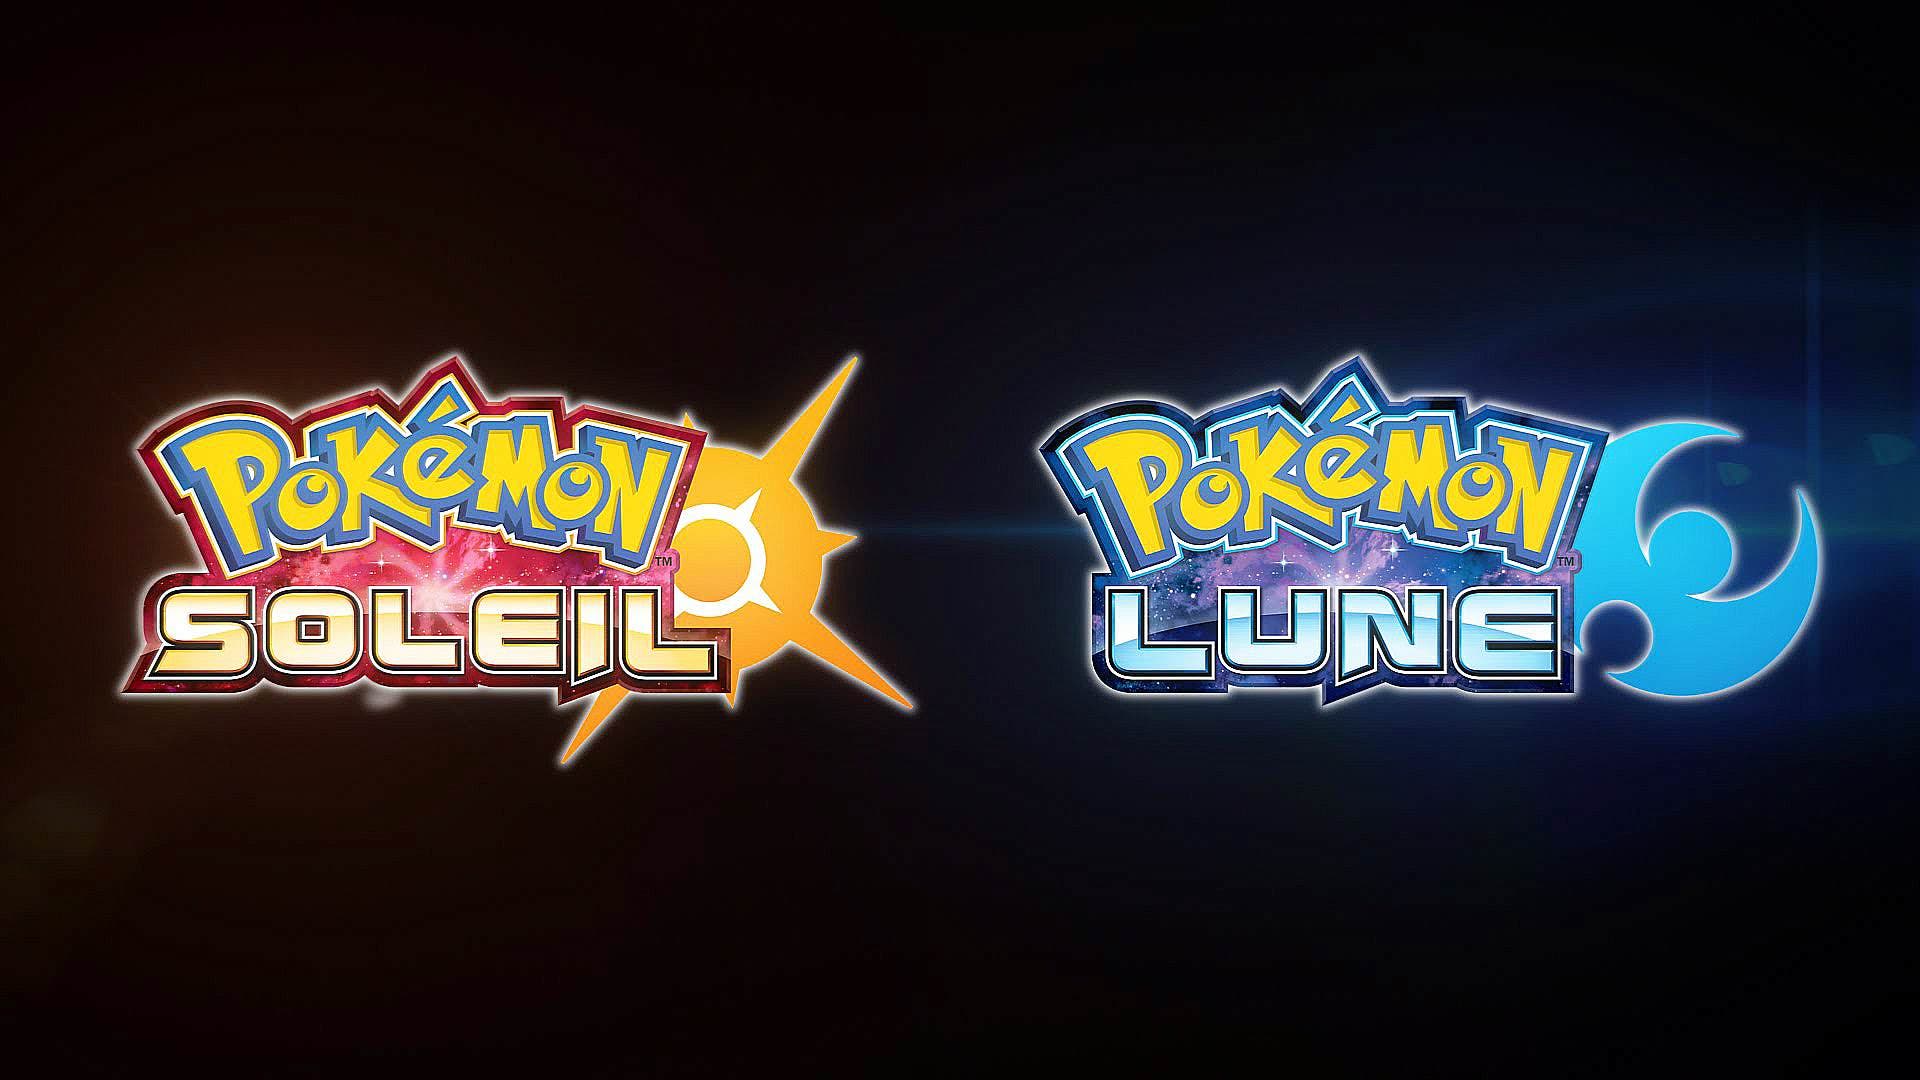 ‘Pokémon Sol y Luna’ pulveriza récords en Francia